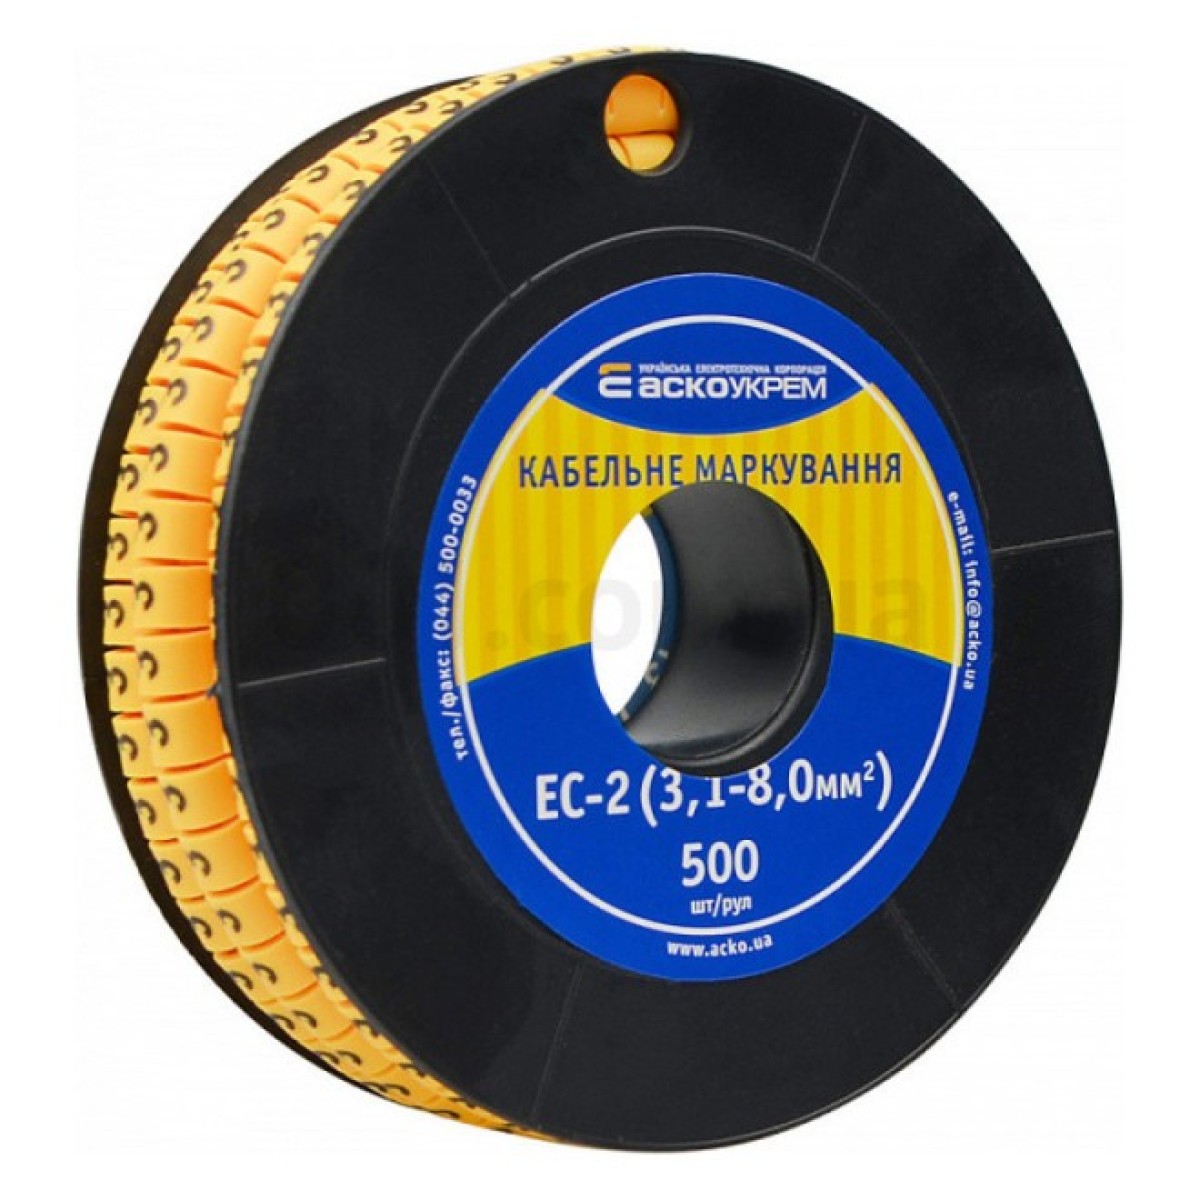 Маркировка EC-2 для кабеля 3,1-8,0 мм² символ «3» (рулон 500 шт.), АСКО-УКРЕМ 256_256.jpg